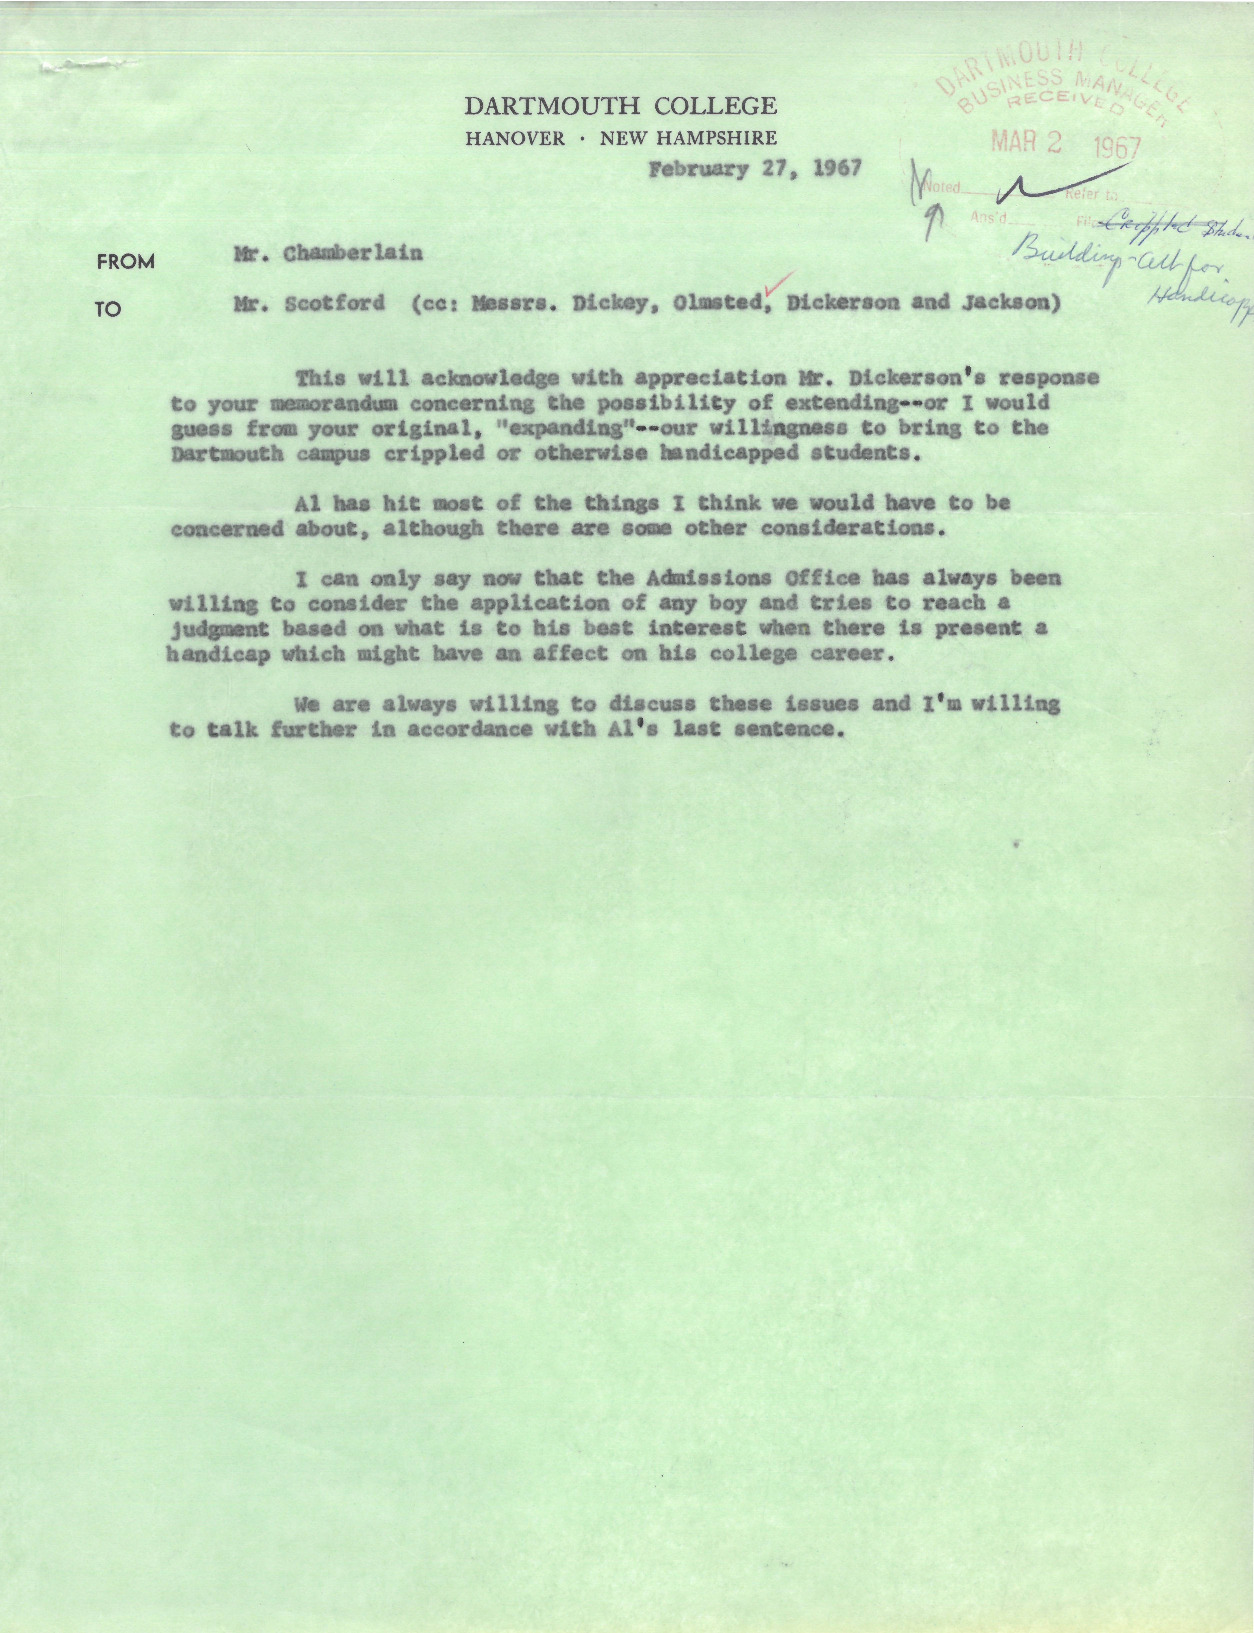 Chamberlain&#039;s response to John Scotford, Feb. 27, 1967